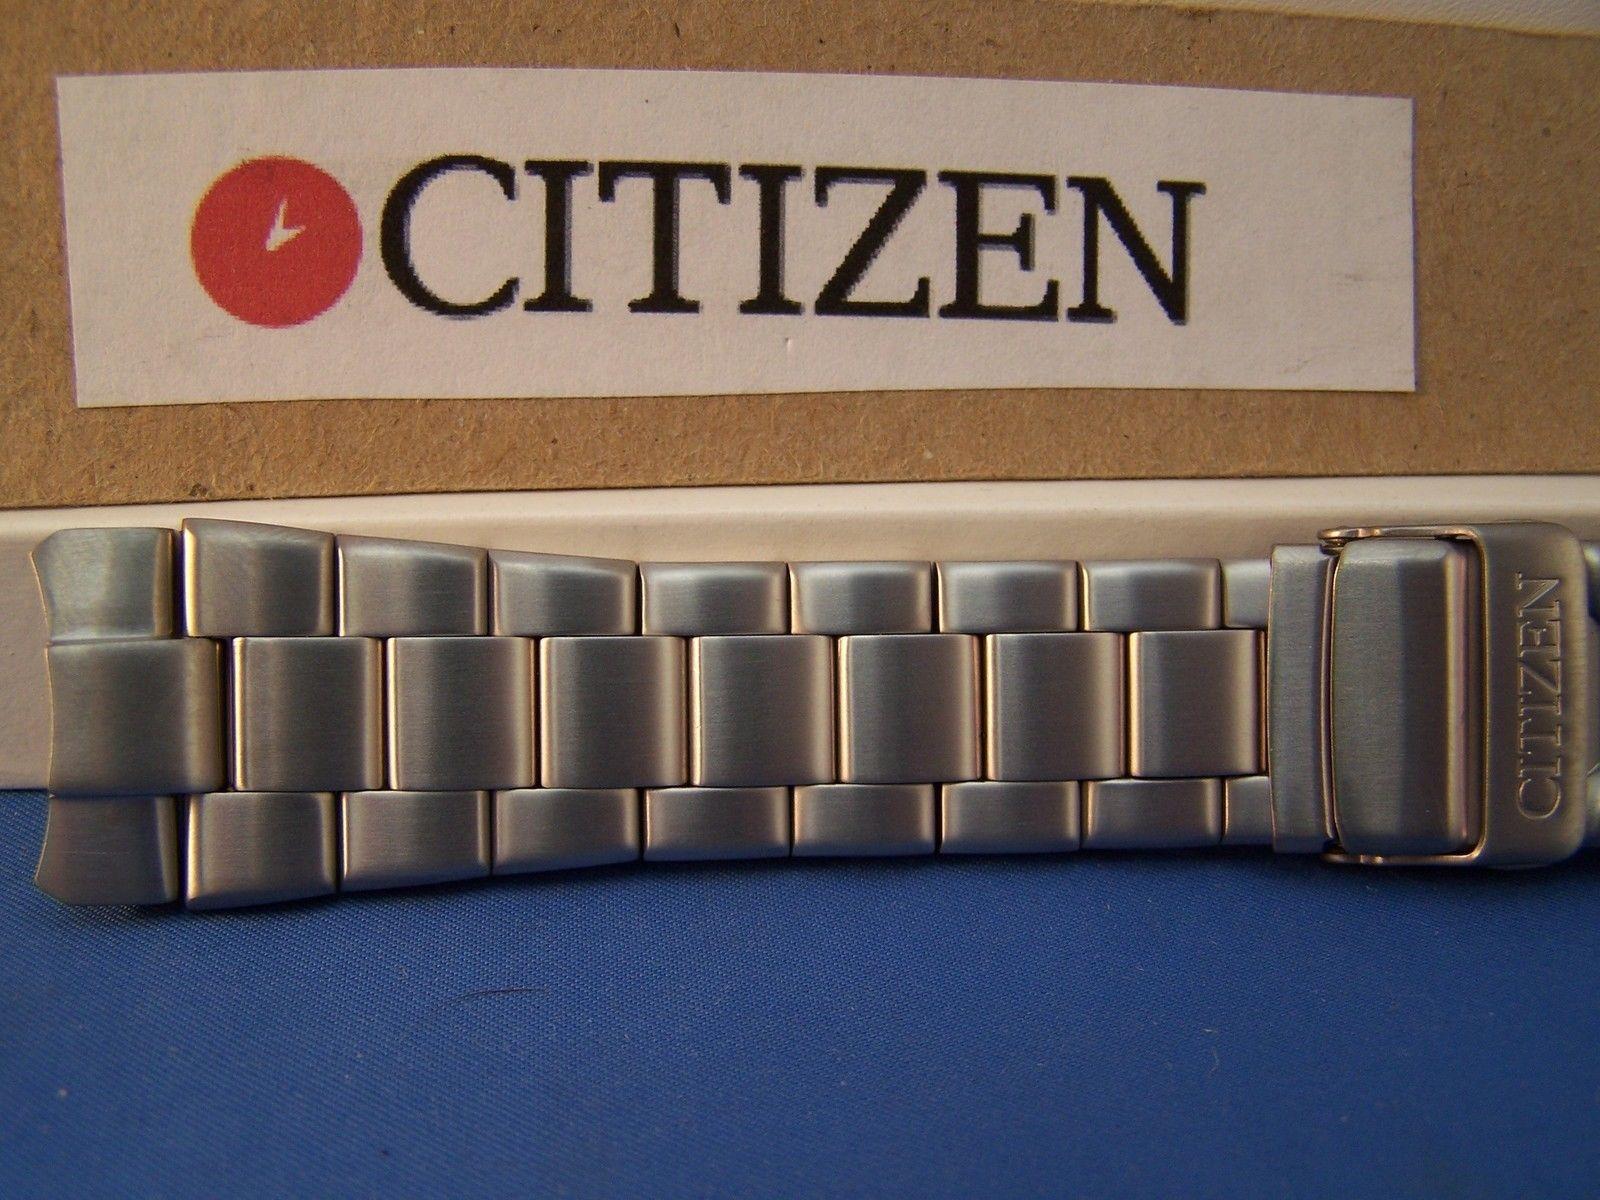 Citizen watchband BL5250 -53L Solid Linked Titanium Bracelet